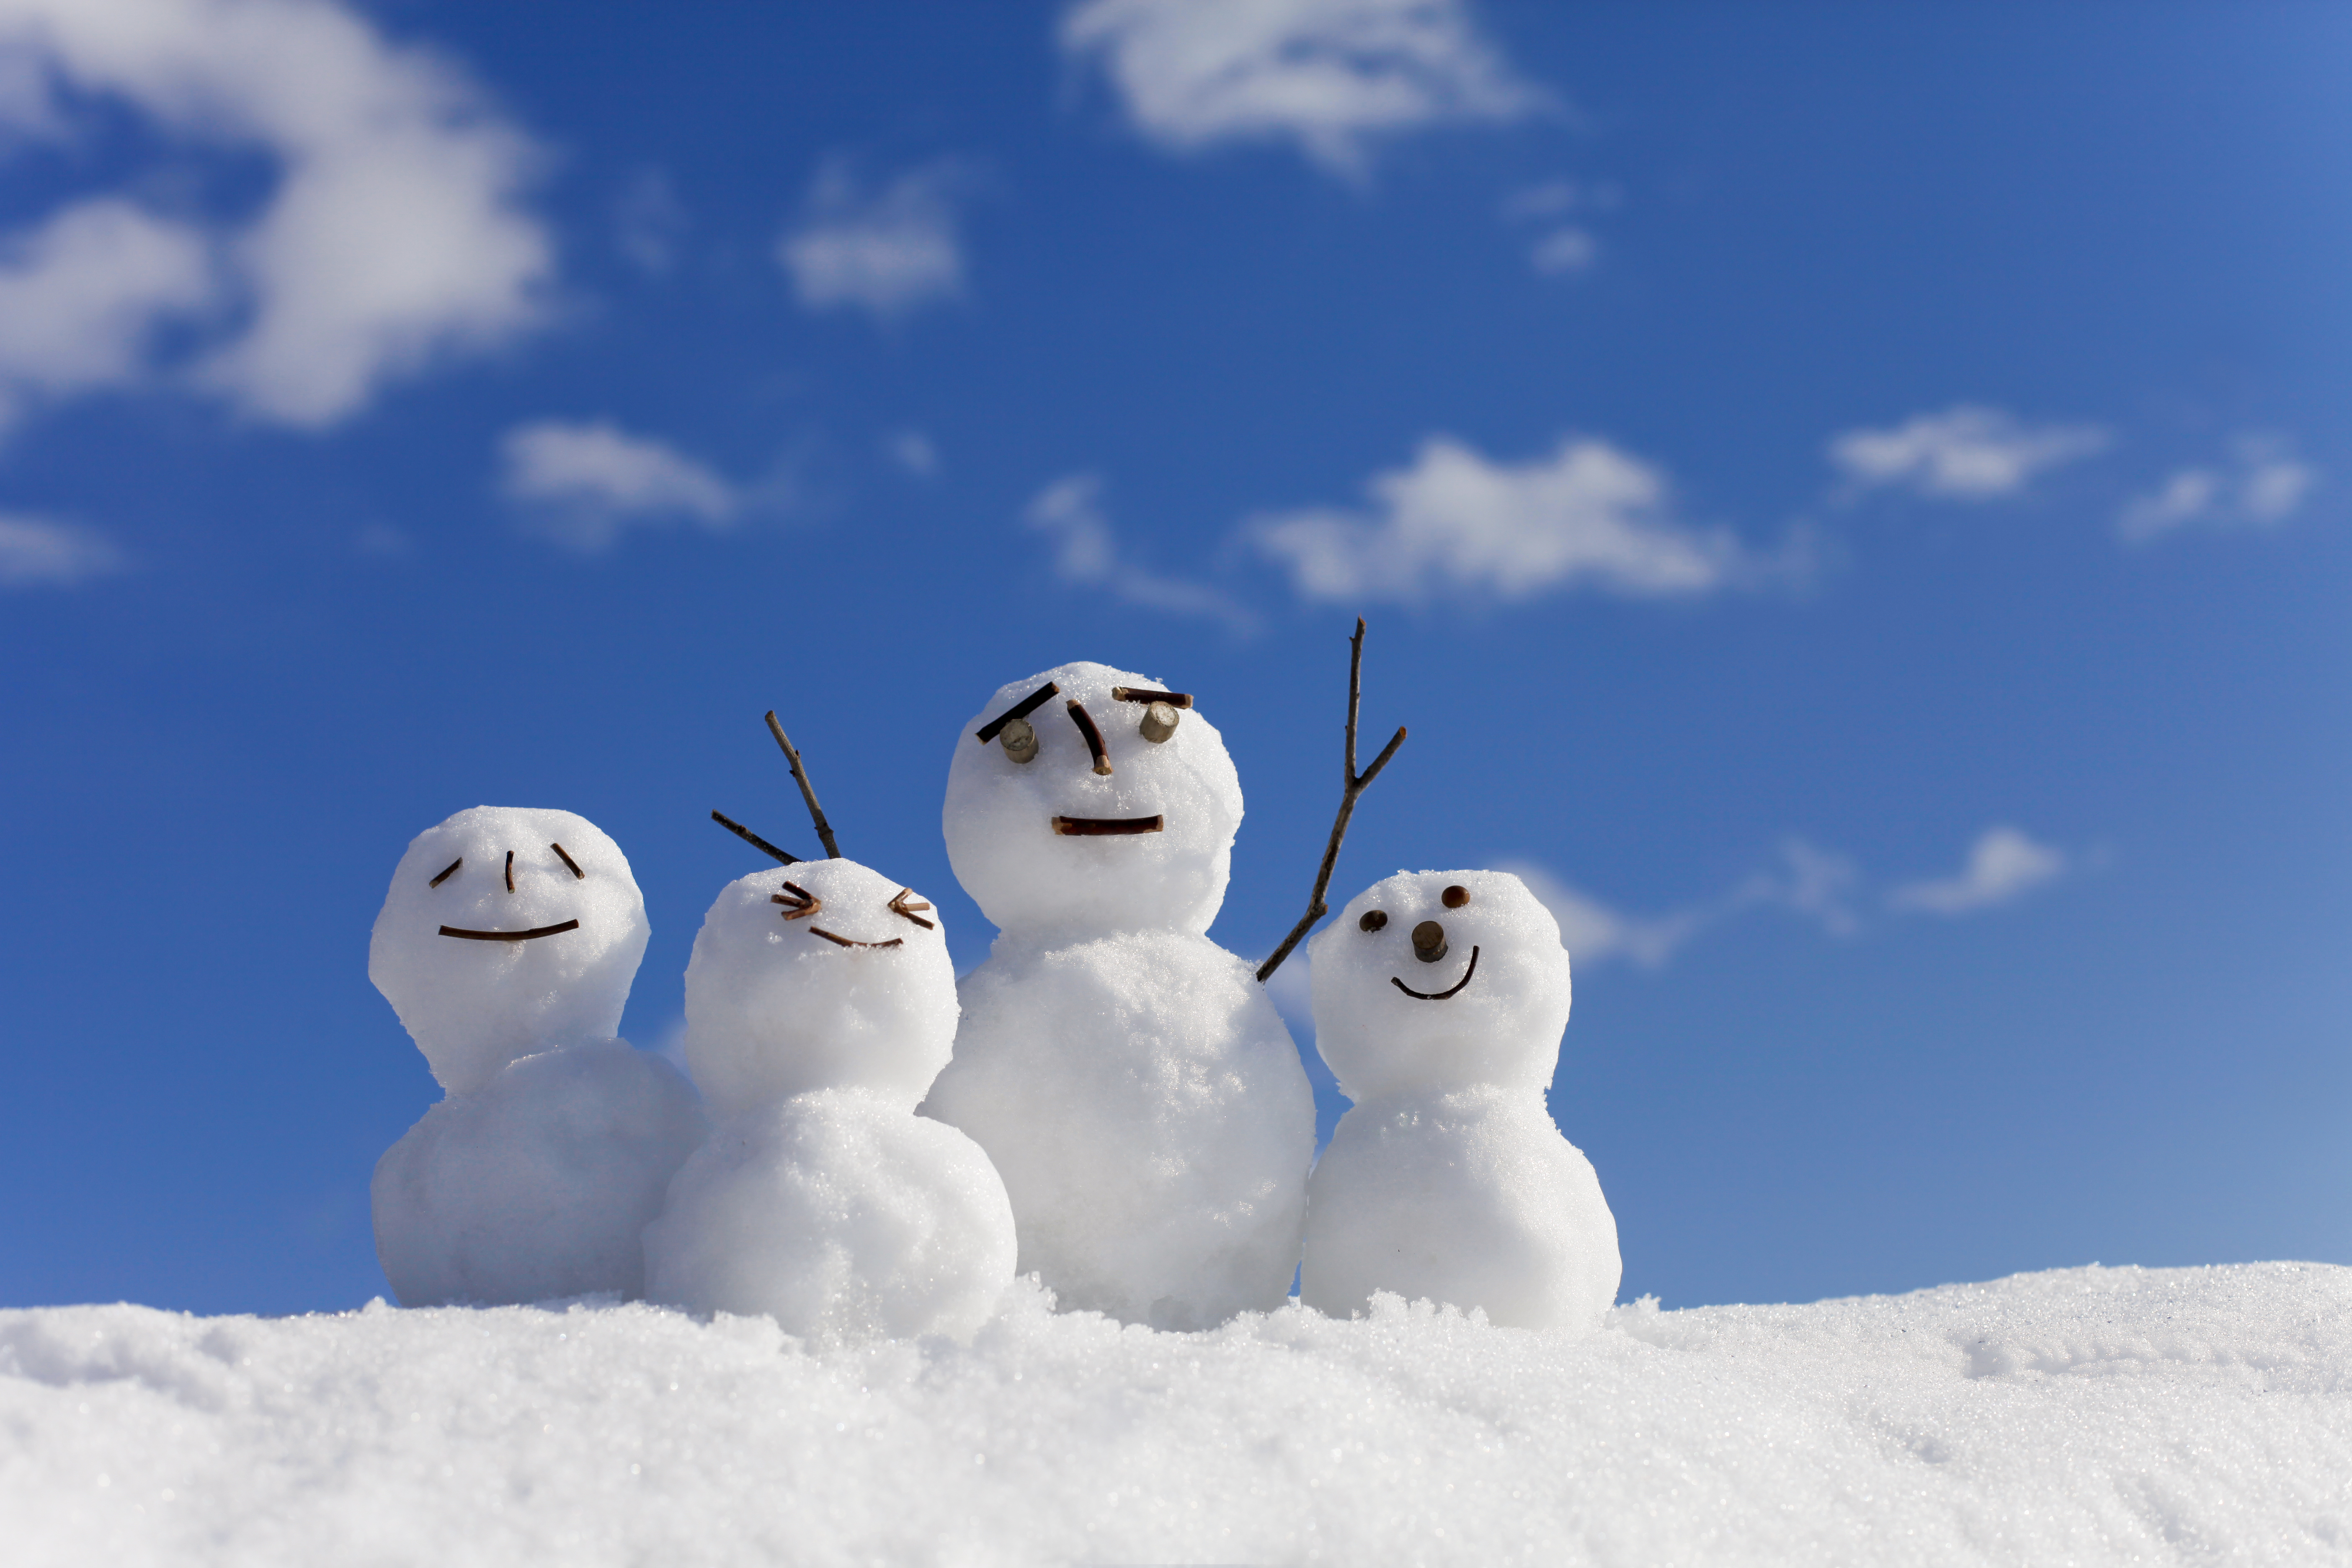 Registration now open for Bancroft & Area Kids in Need’s winter snowsuit program